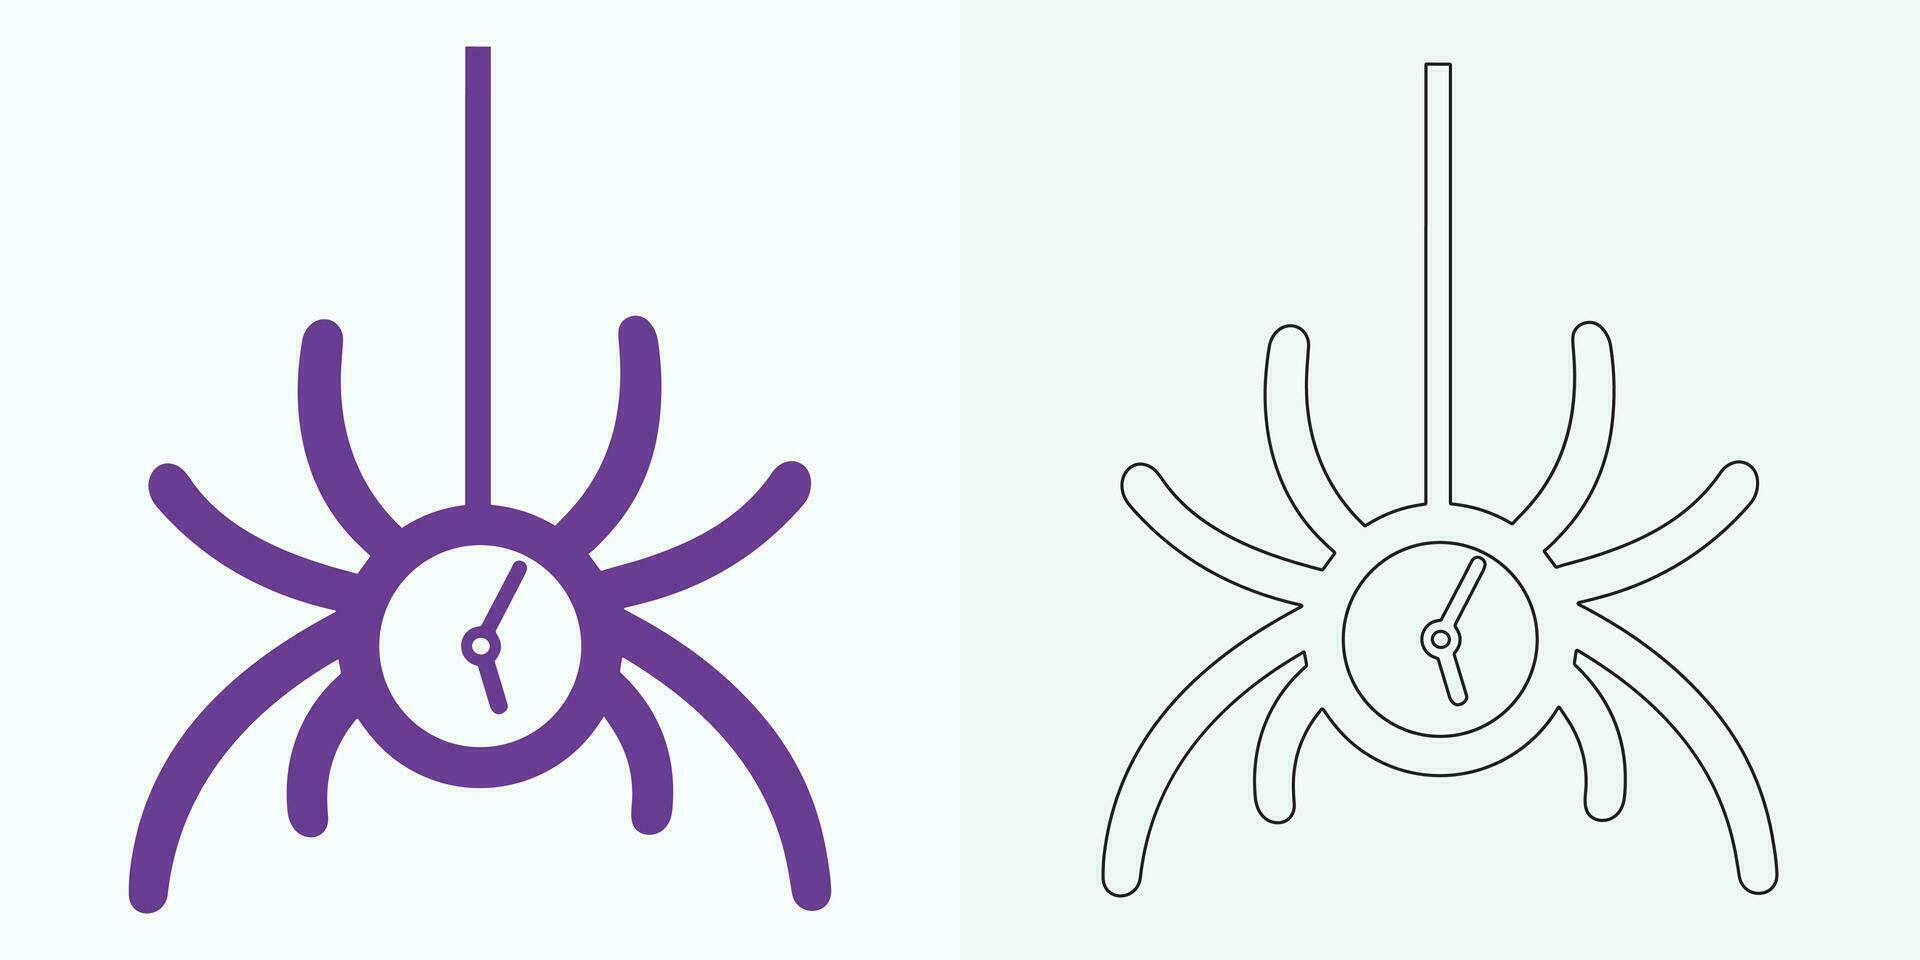 Novo estilo analógico relógio plano vetor ícone. símbolo do Tempo gerenciamento, cronômetro com hora, minuto, e segundo seta. simples ilustração isolado em uma branco fundo.